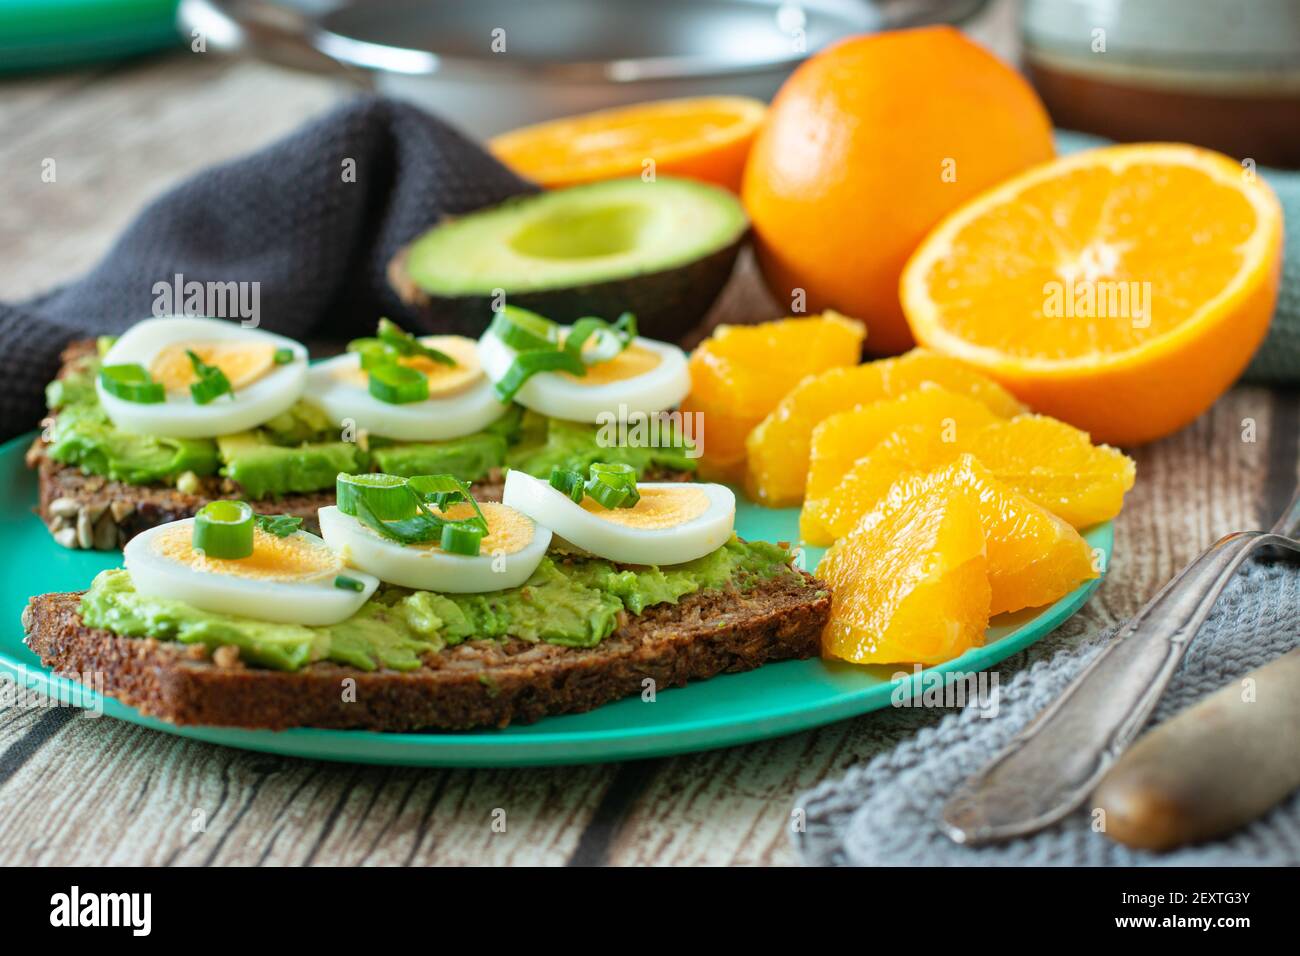 Trainingsmenü mit Ei-Avocado-Sandwich serviert mit frisch geschälten Orangen. Post- und Pre-Workout-Mahlzeit auf einem klimafreundlichen Bambusblech Stockfoto